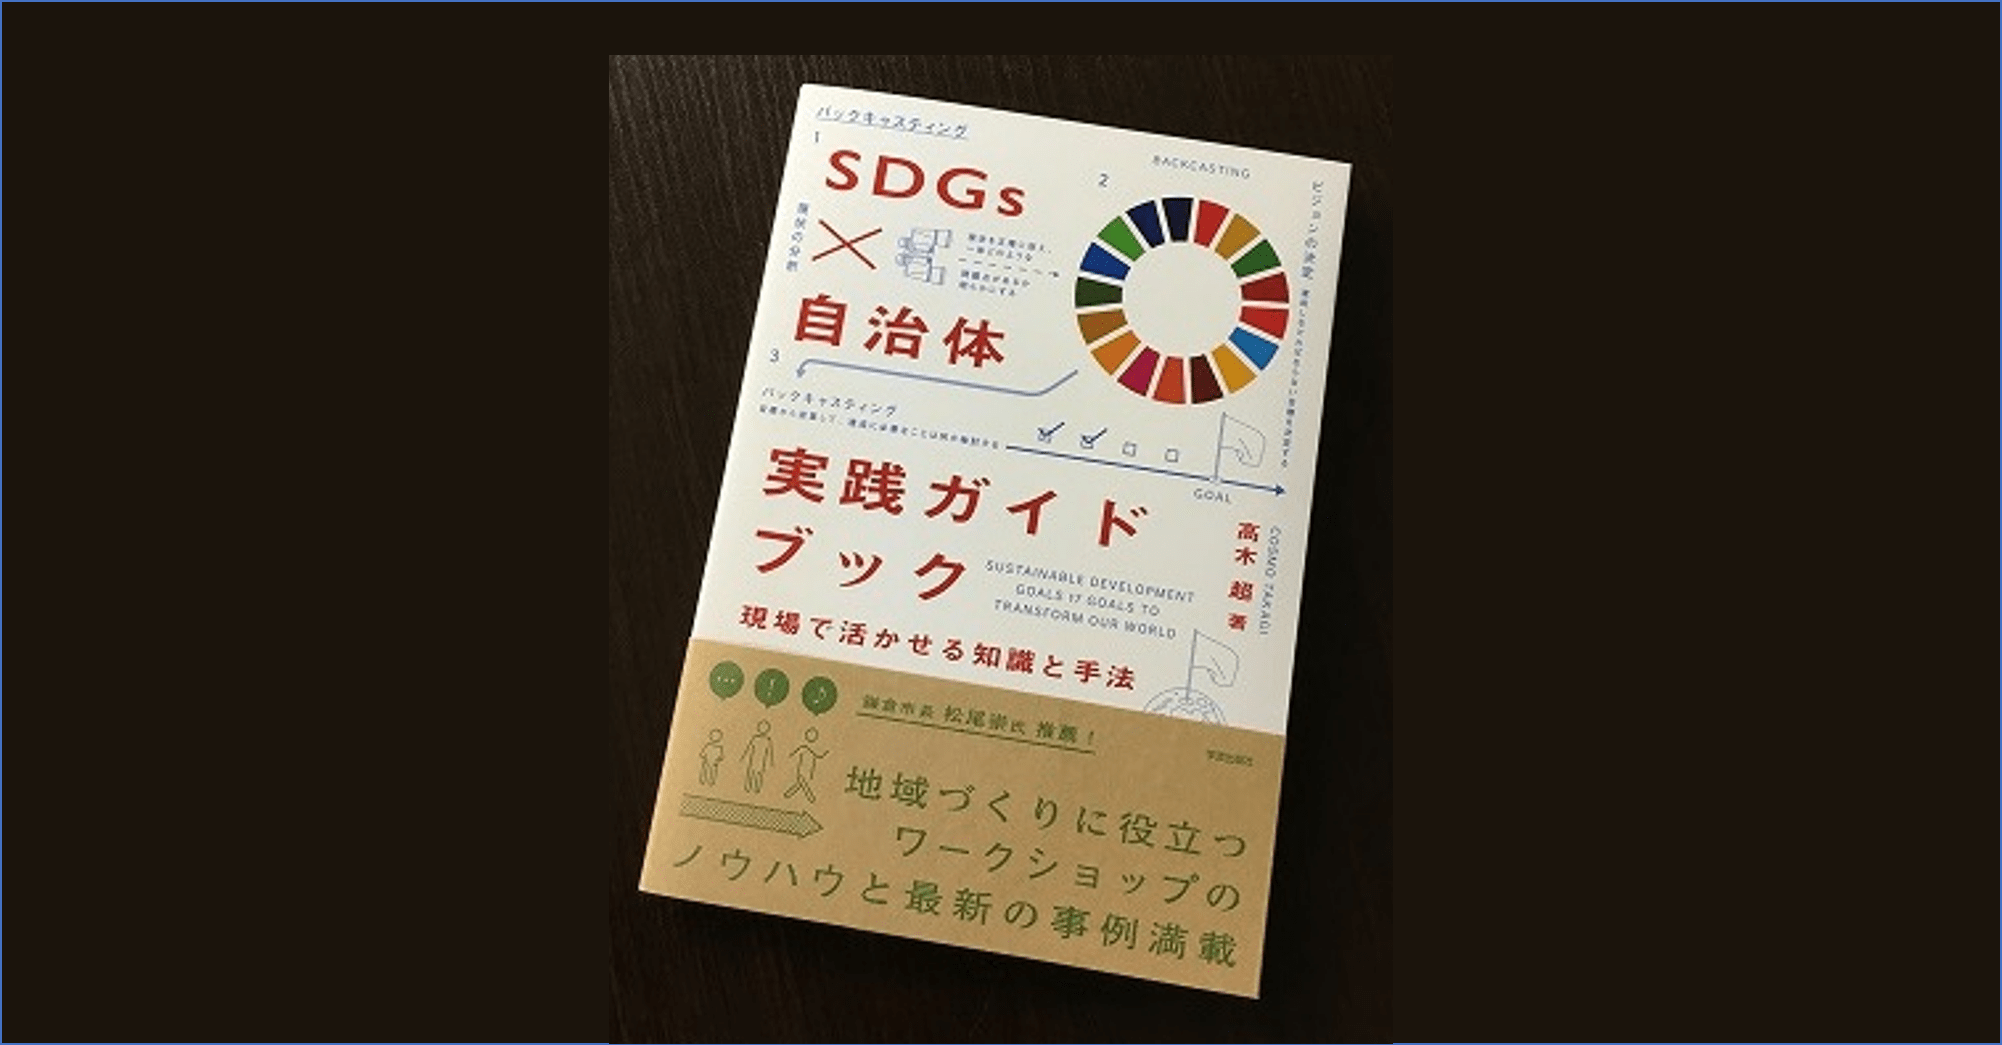 『SDGs×自治体 実践ガイドブック 現場で活かせる知識と手法』